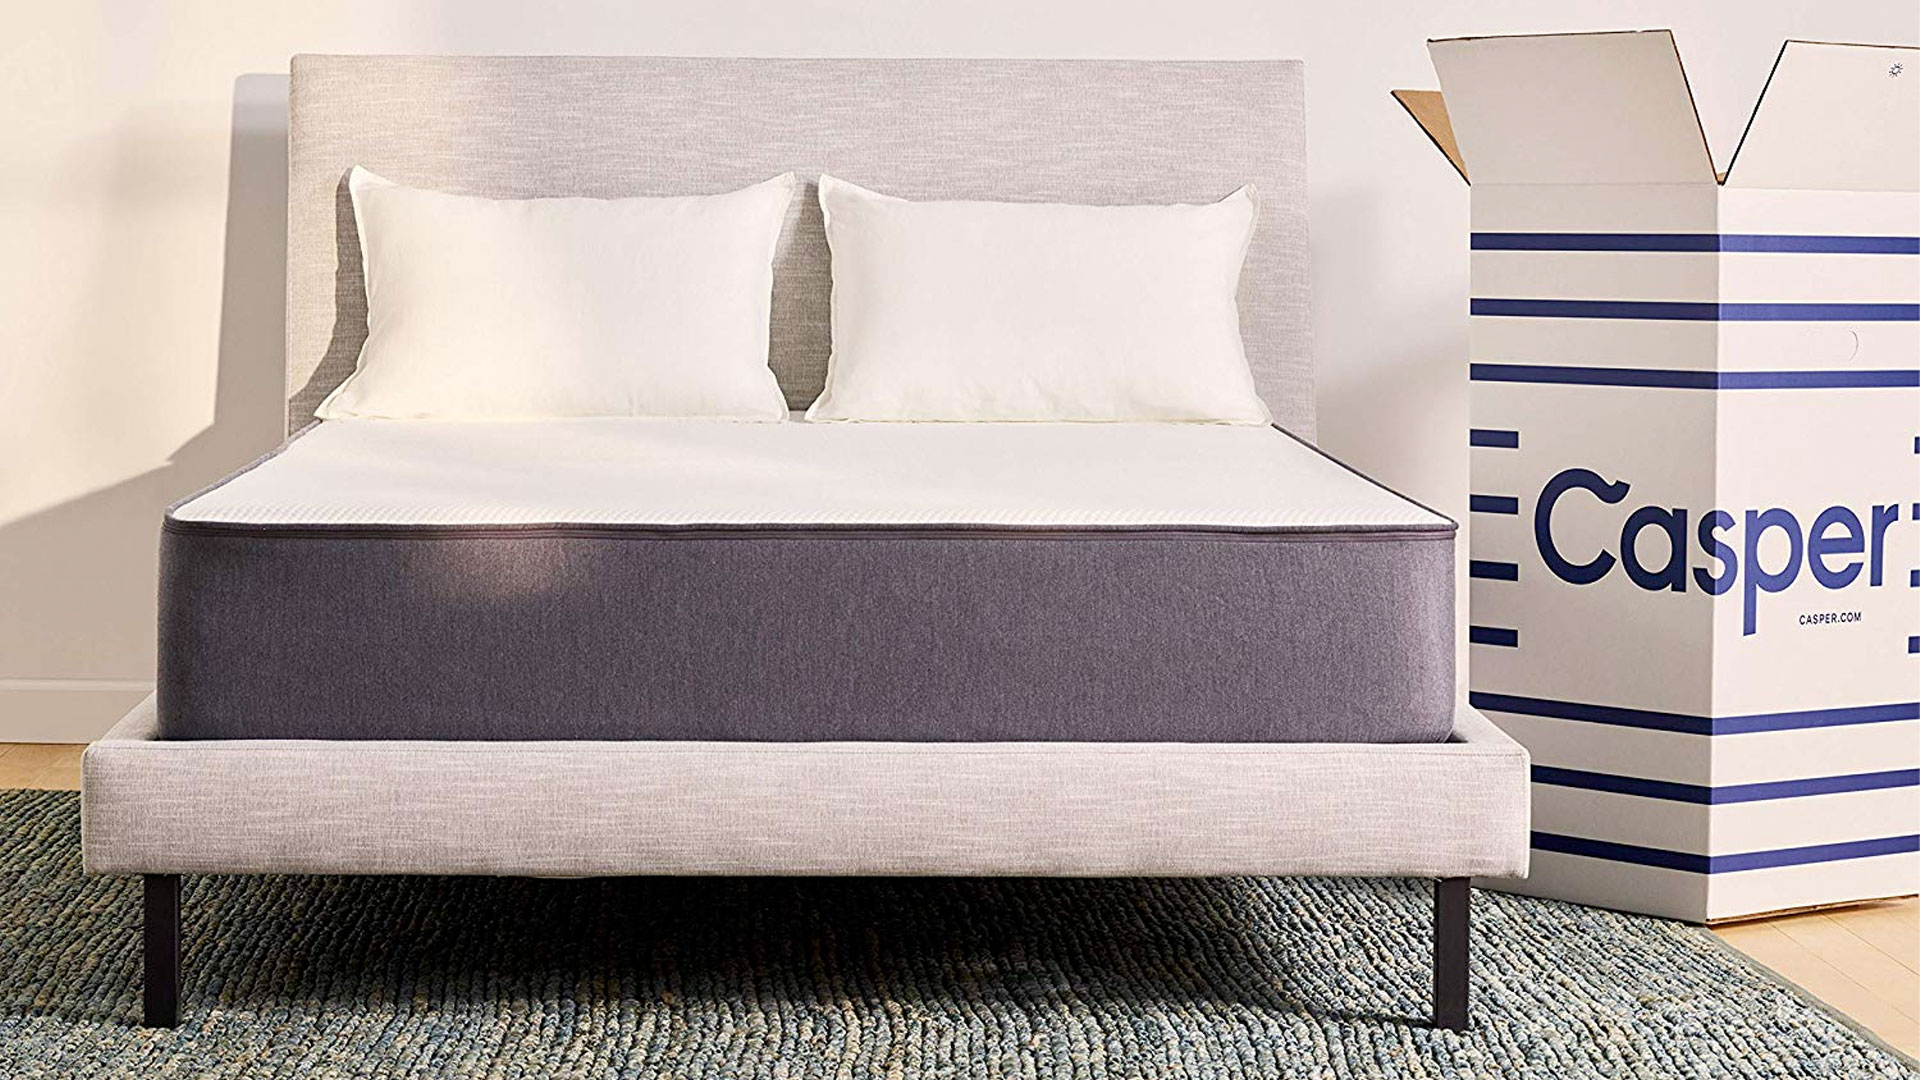 wayfare beds for casper mattress